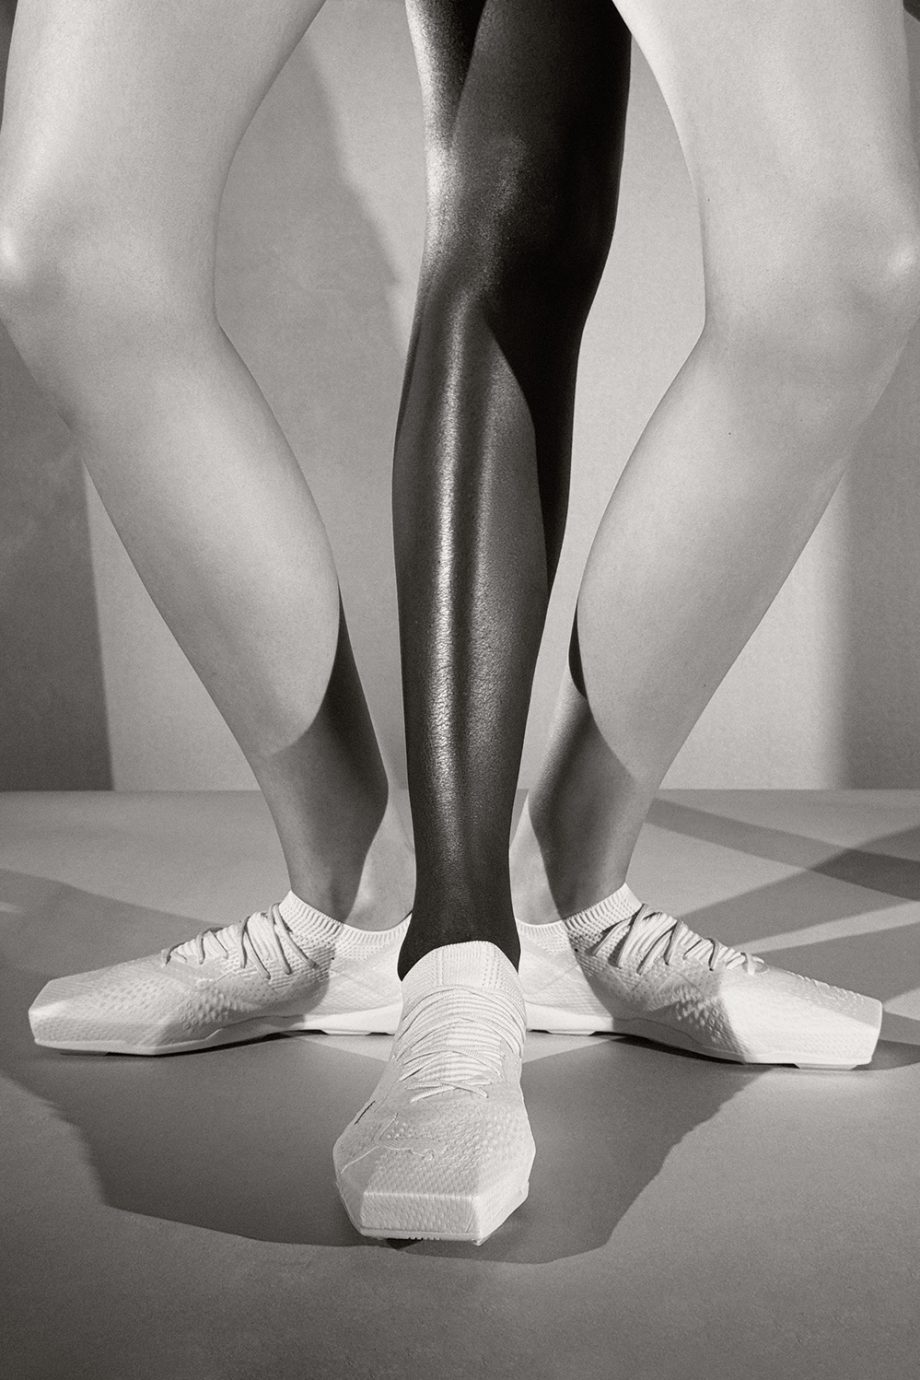 is-het-een-voetbalschoen-of-een-ballerina-coperni-lanceert-eerste-sneaker-in-samenwerking-met-puma-281880